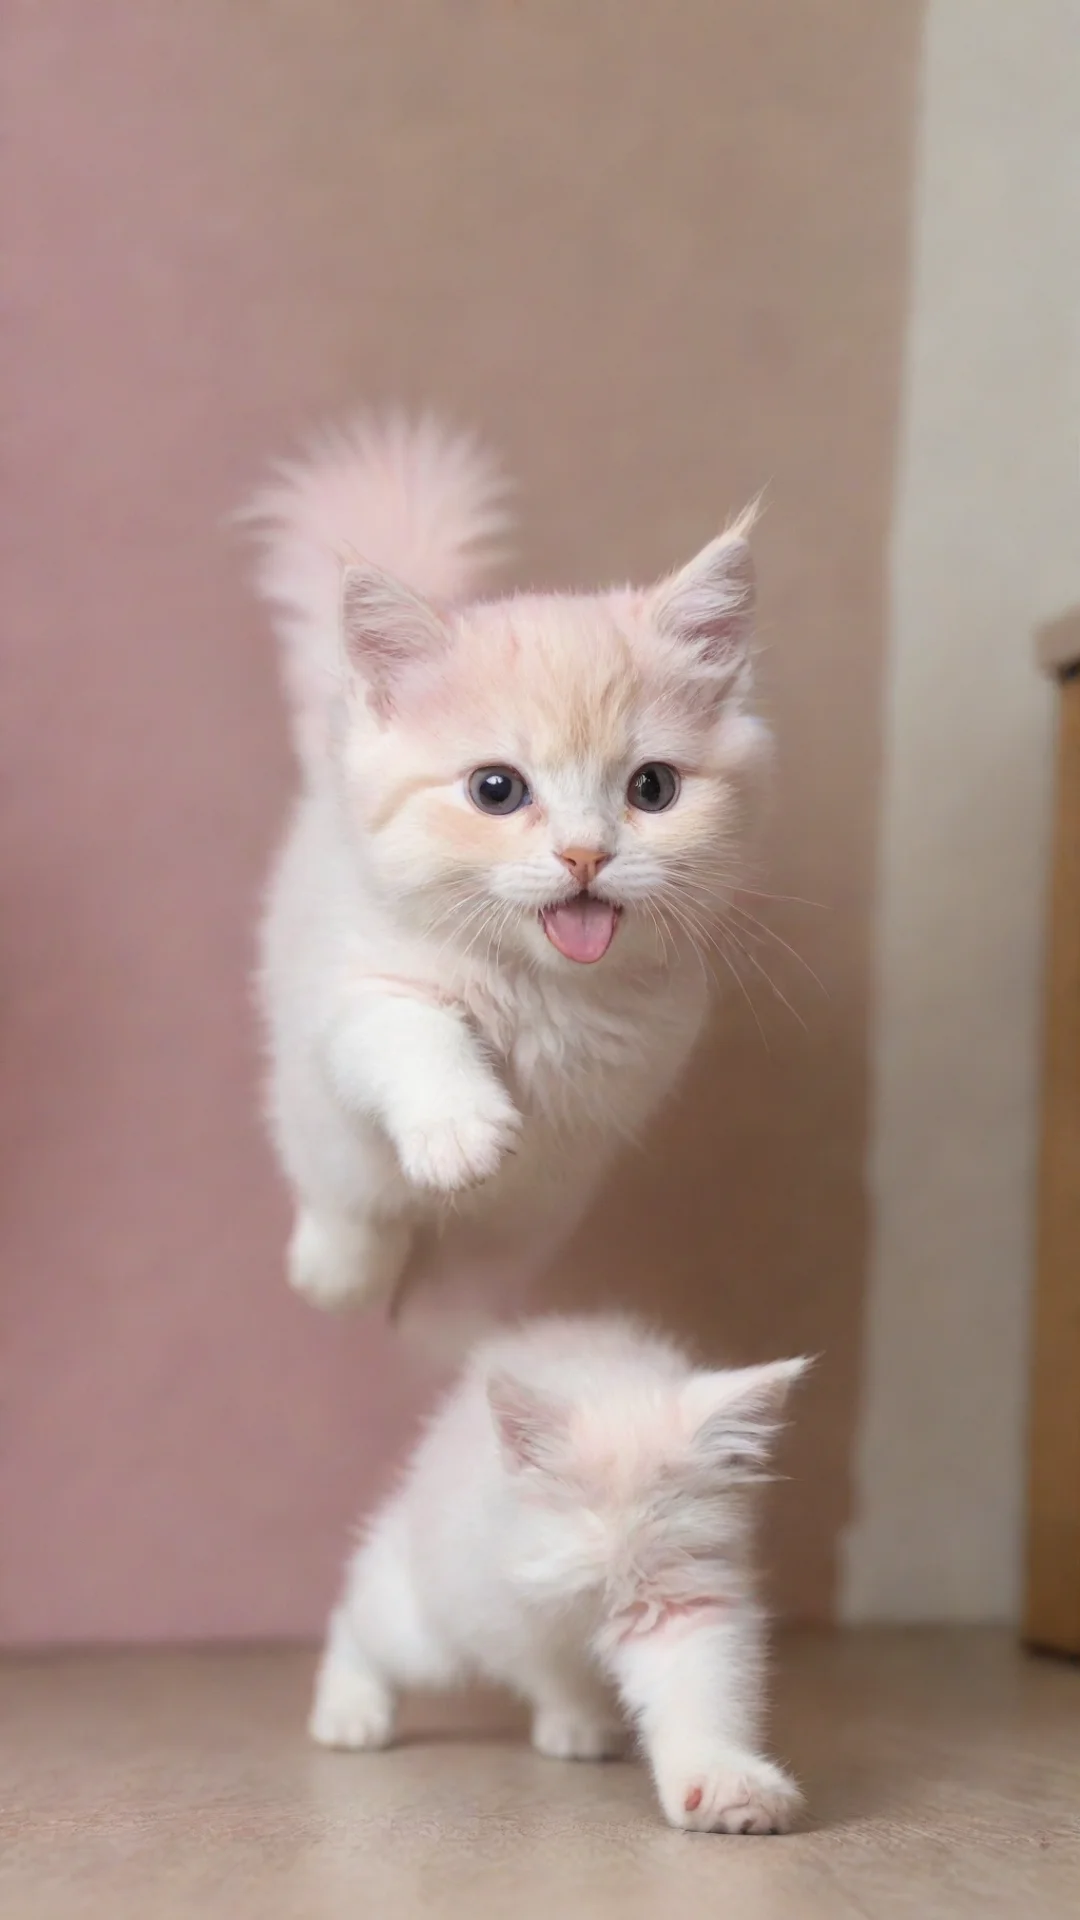 aiamazing cria a imagem de um gato rosa voando awesome portrait 2 tall